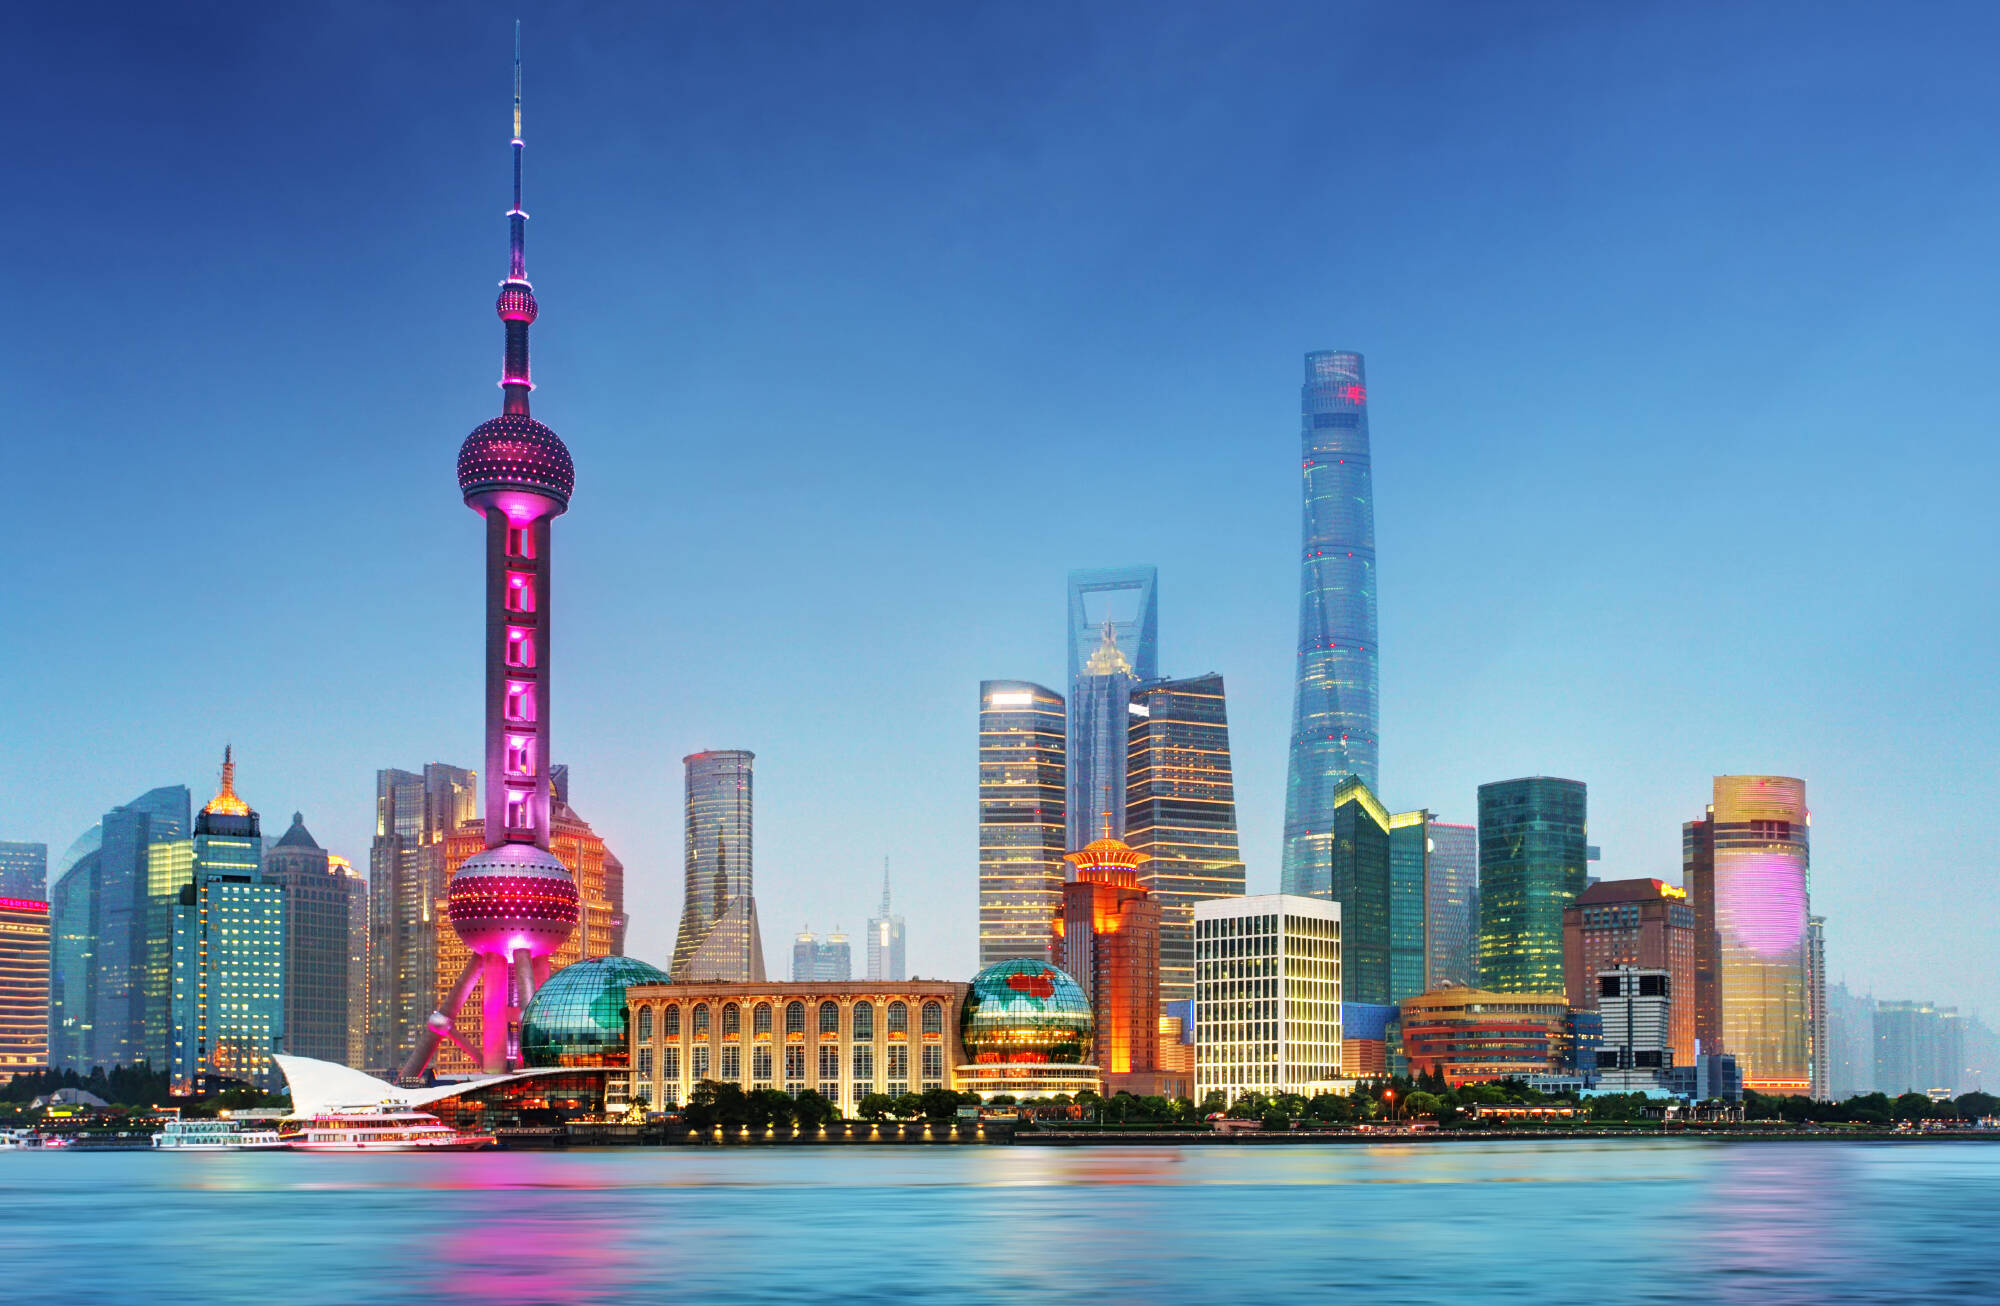 Shanghai Reisen und Billigflug - China - Hotels und Flug nach Shanghai